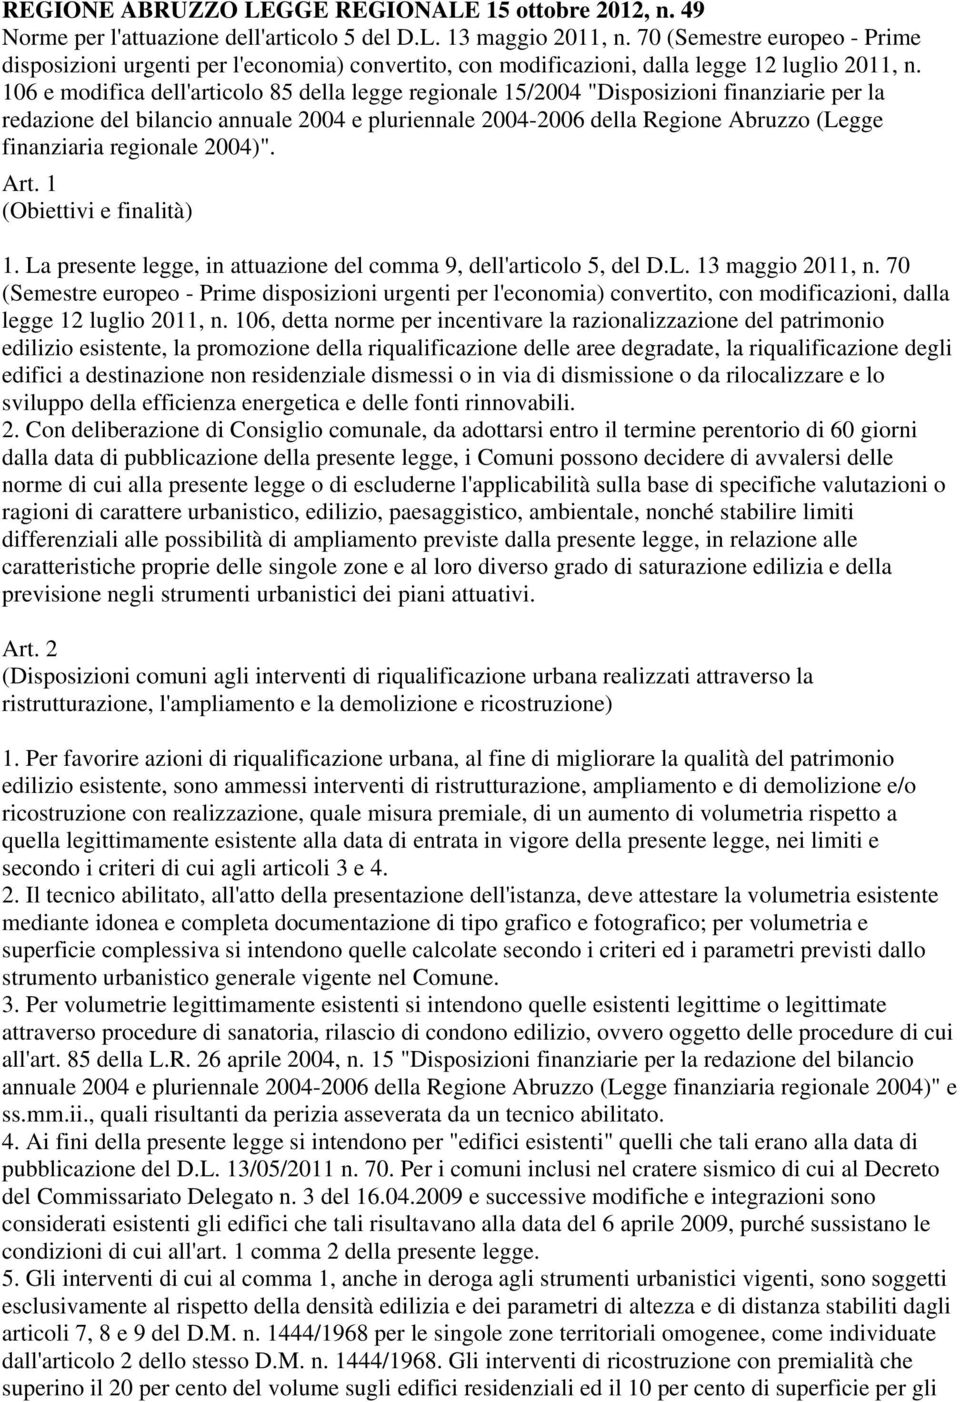 106 e modifica dell'articolo 85 della legge regionale 15/2004 "Disposizioni finanziarie per la redazione del bilancio annuale 2004 e pluriennale 2004-2006 della Regione Abruzzo (Legge finanziaria